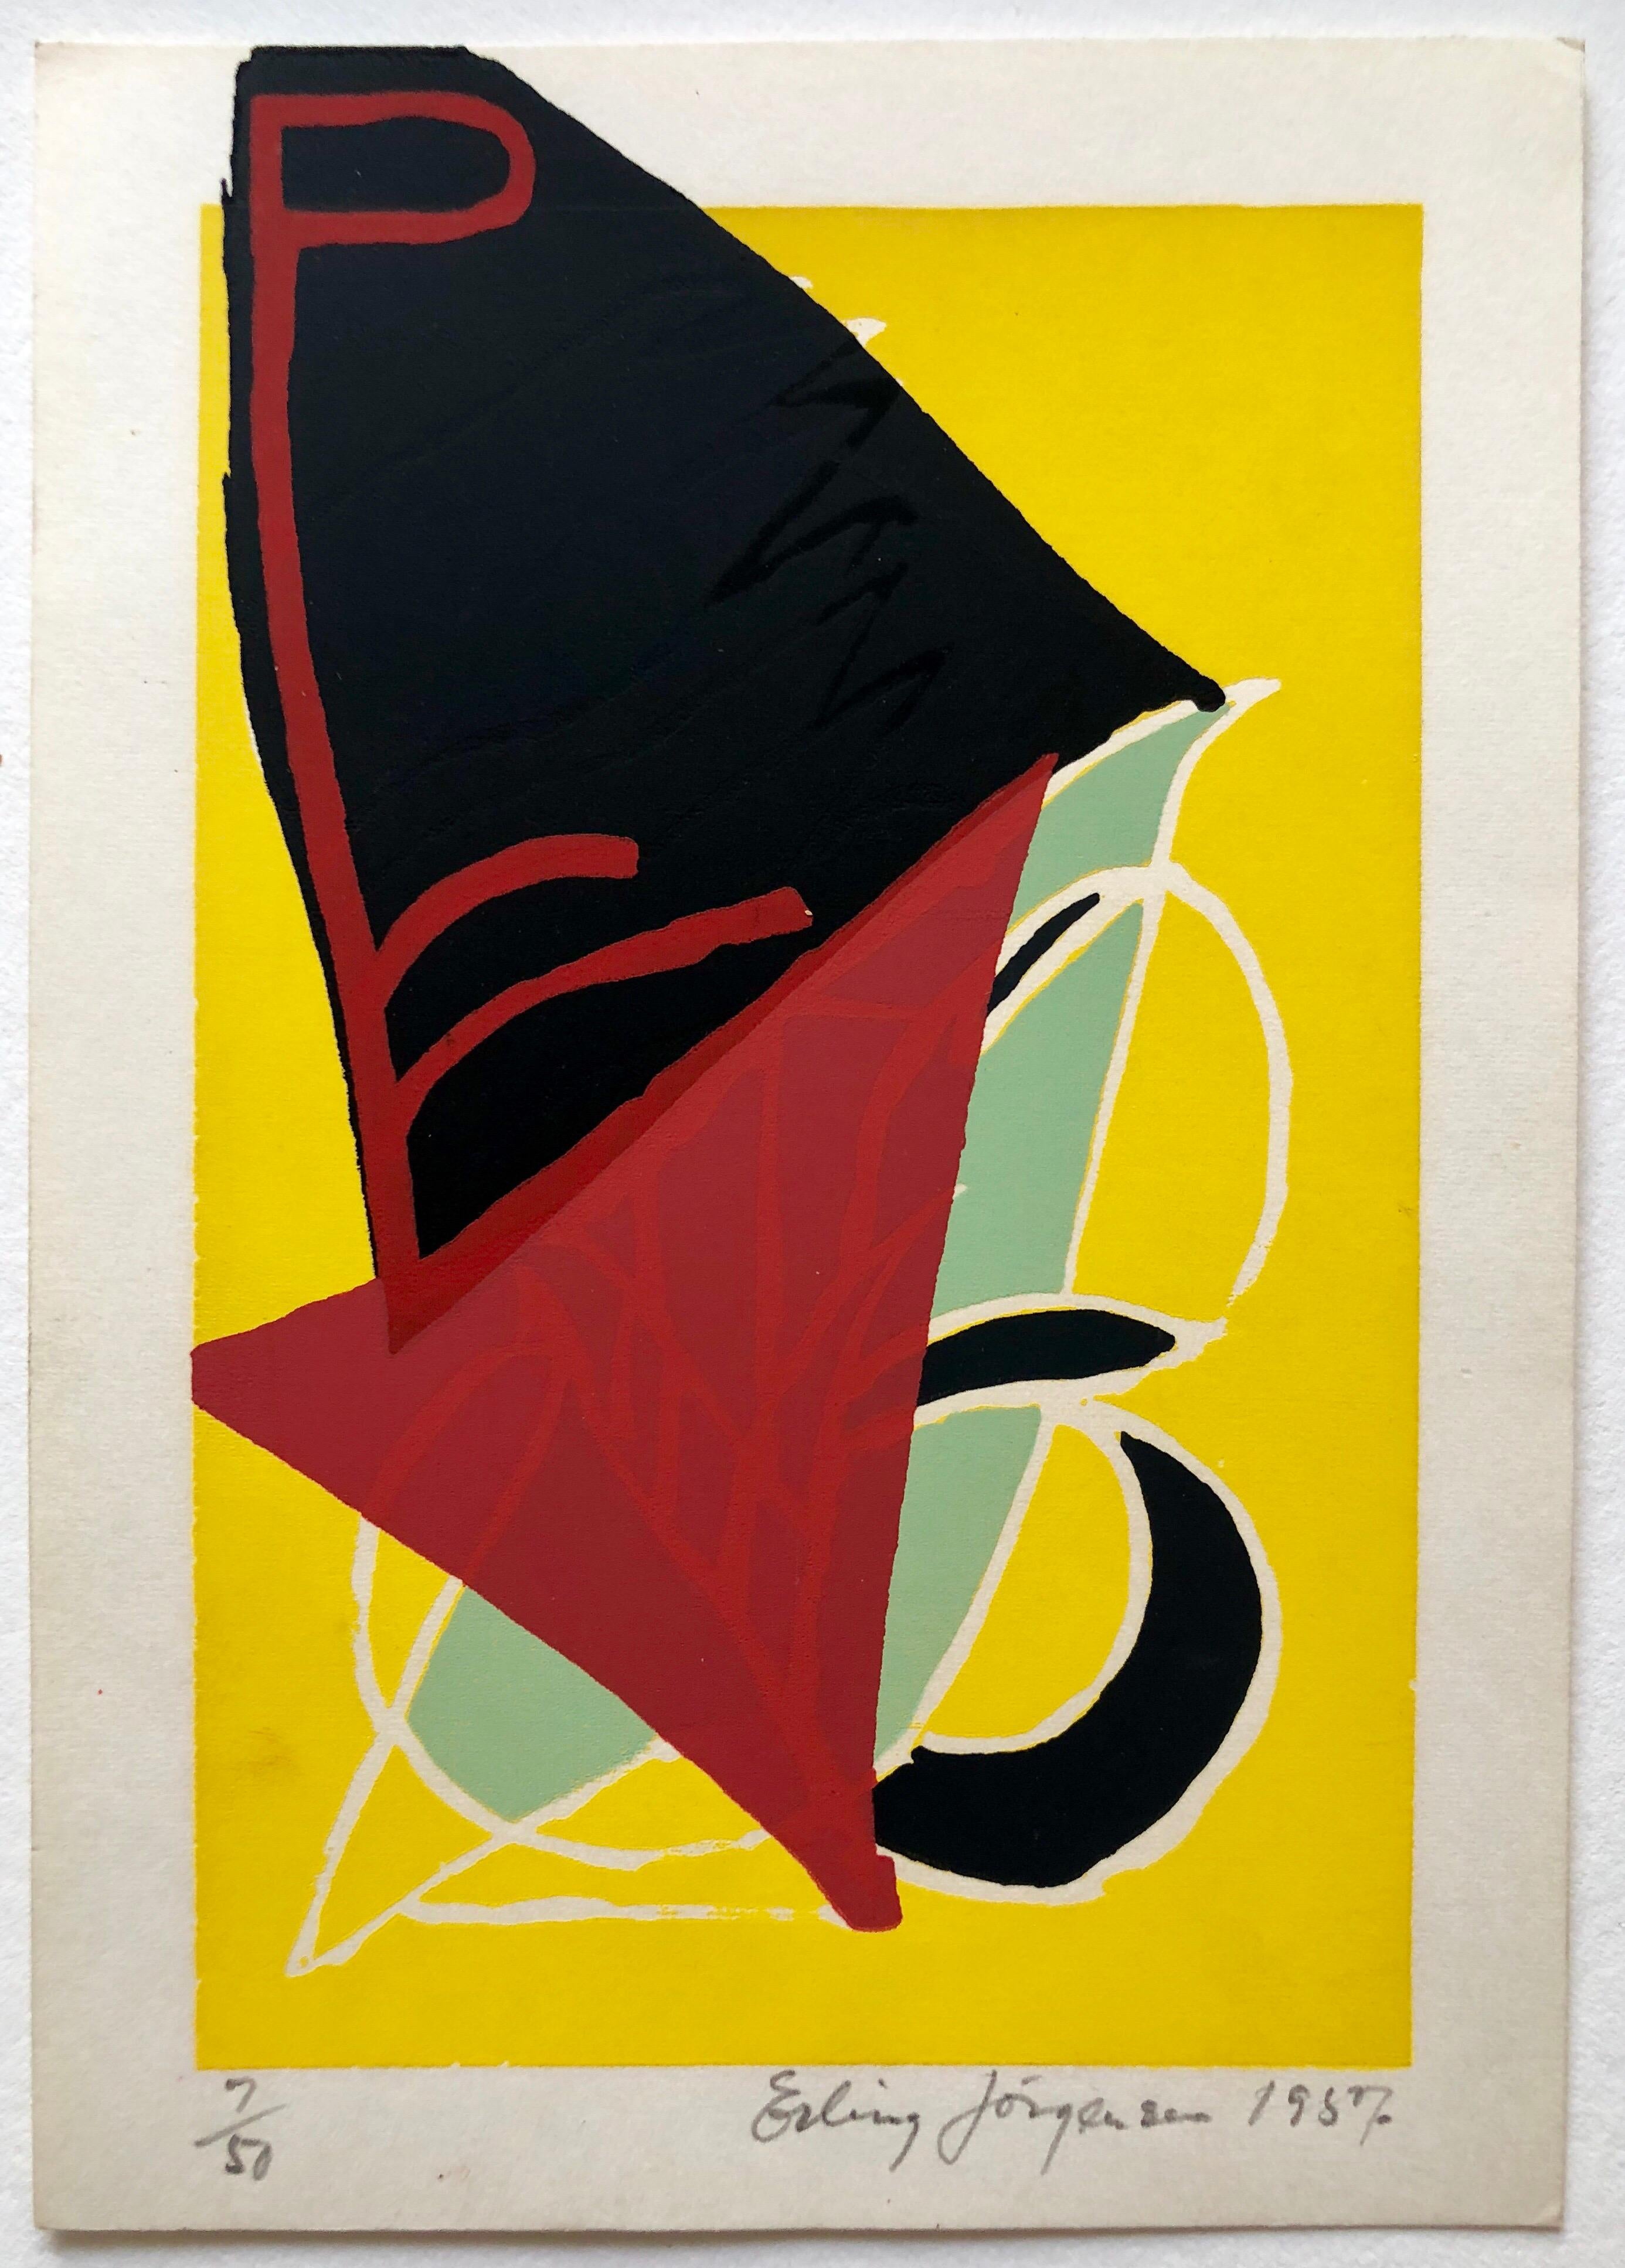 Cobra-Künstler Siebdruck Serigraphie 1950er Jahre leuchtend farbenfrohe, abstrakte, handsigniert (Abstrakter Expressionismus), Print, von Erling Jorgensen